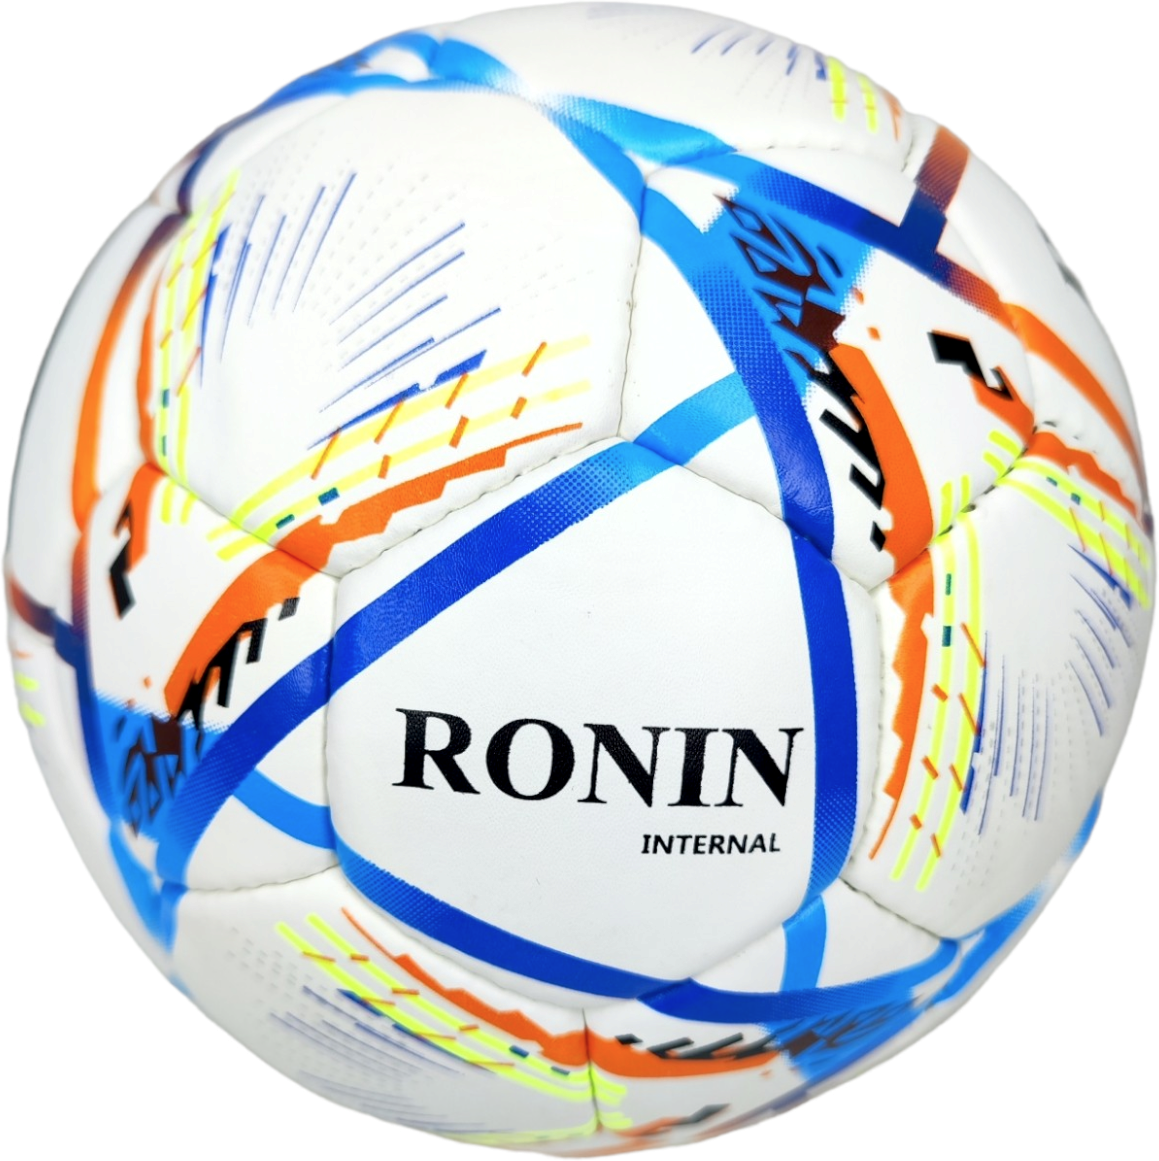 Футбольный мяч Ronin Дизайн AL Rihla (чемпионата мира Катар 2022) размер 4